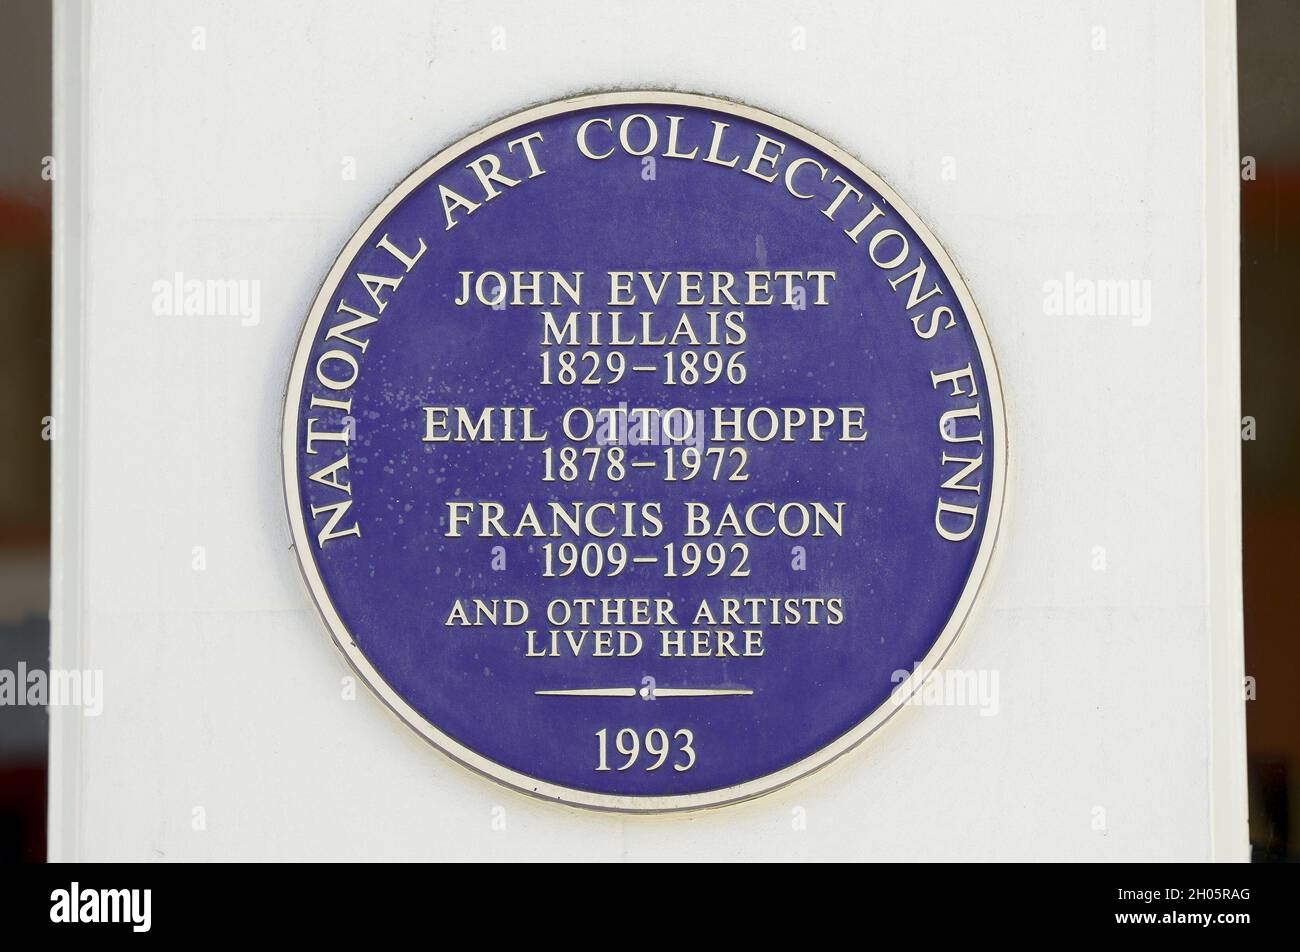 Londra, Regno Unito. Targa commemorativa: 'John Everett Millais 1829-1896, Emil otto Hoppe 1878-1972, Francis Bacon 1909-1992 e altri artisti vissero qui' all'indirizzo Foto Stock